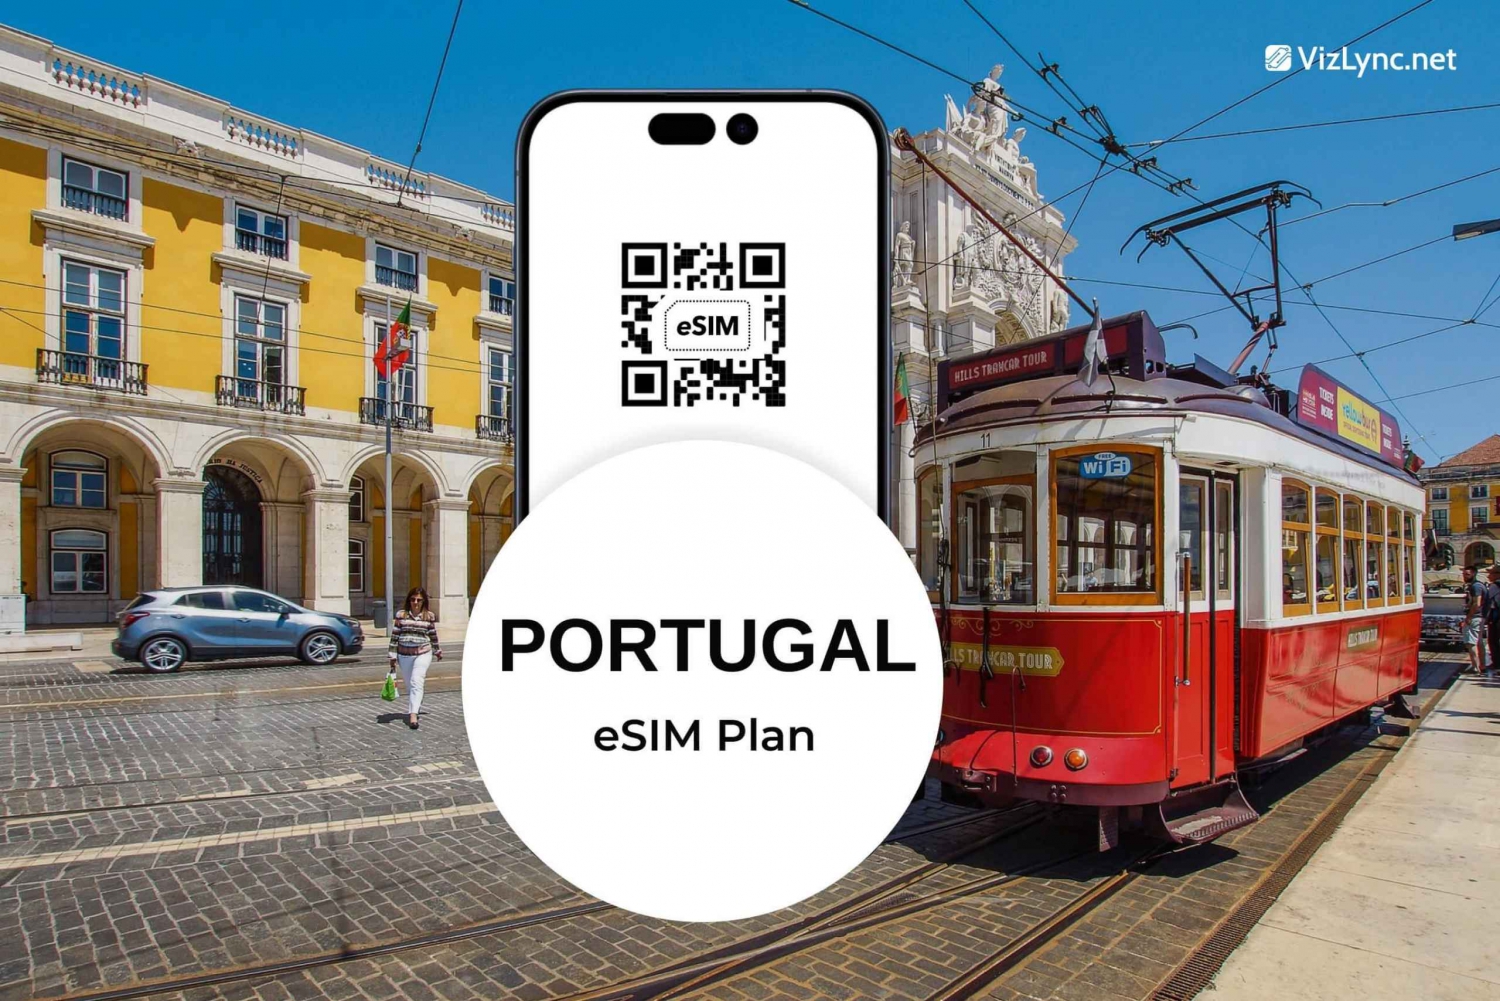 Portuguese Camino de Santiago data eSIM plans